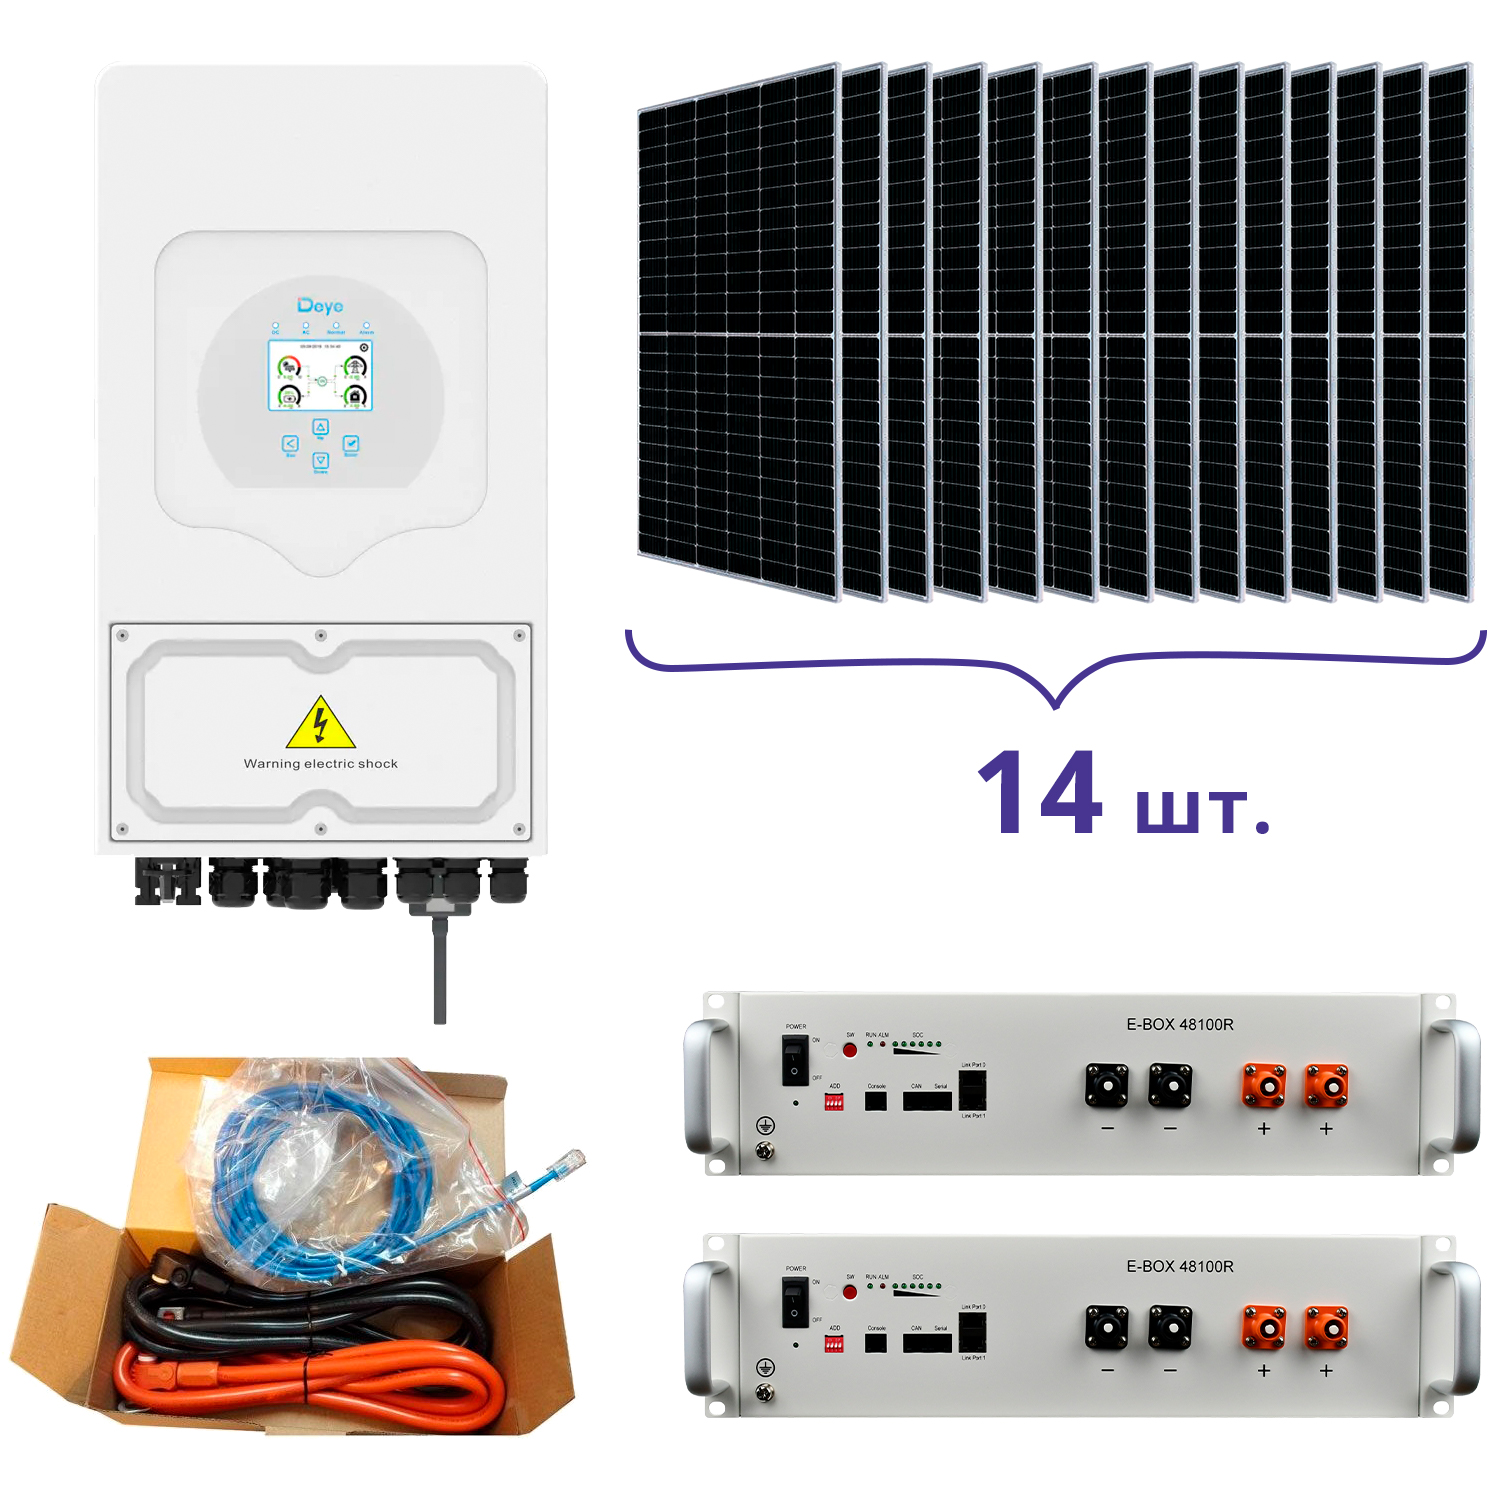 Отзывы система резервного питания Deye SUN-5K-SG03LP1-EU+Pytes E-BOX-48100R-2шт.+Battery Cable Kit-1шт.+JA Solar JAM72S20-460/MR 460 Wp, Mono-14шт.+кабель в Украине